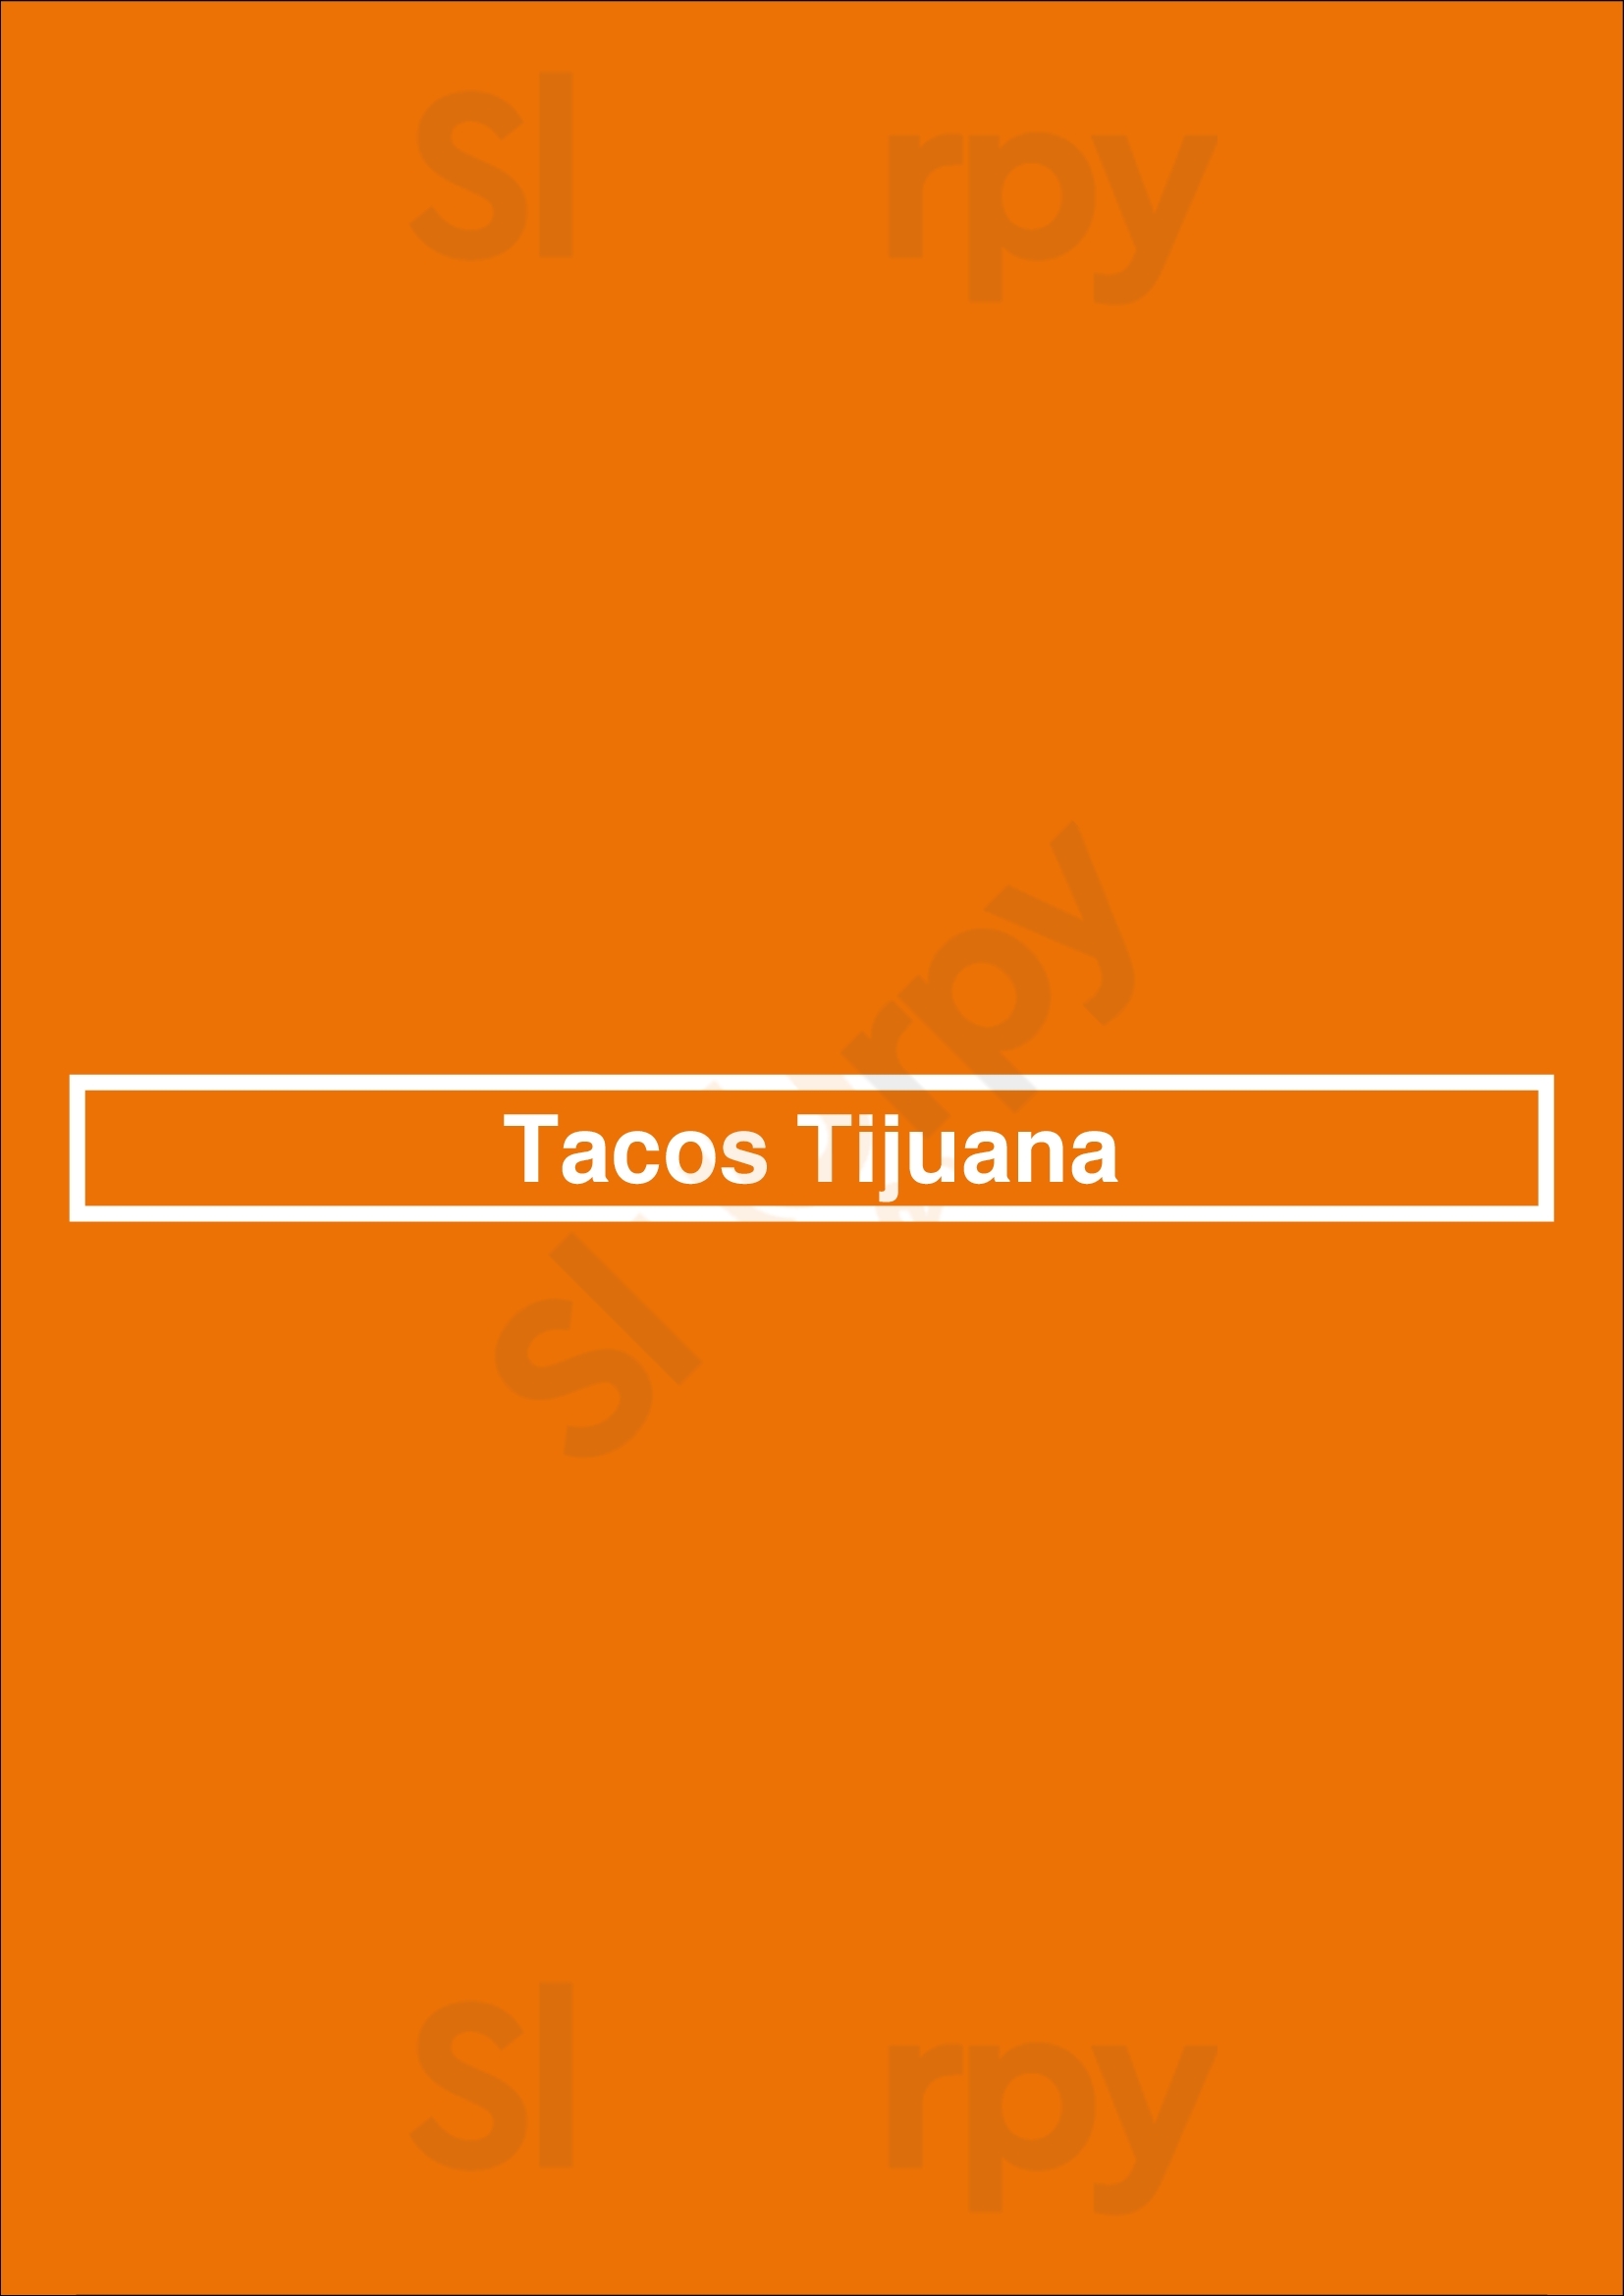 Tacos Tijuana Reno Menu - 1